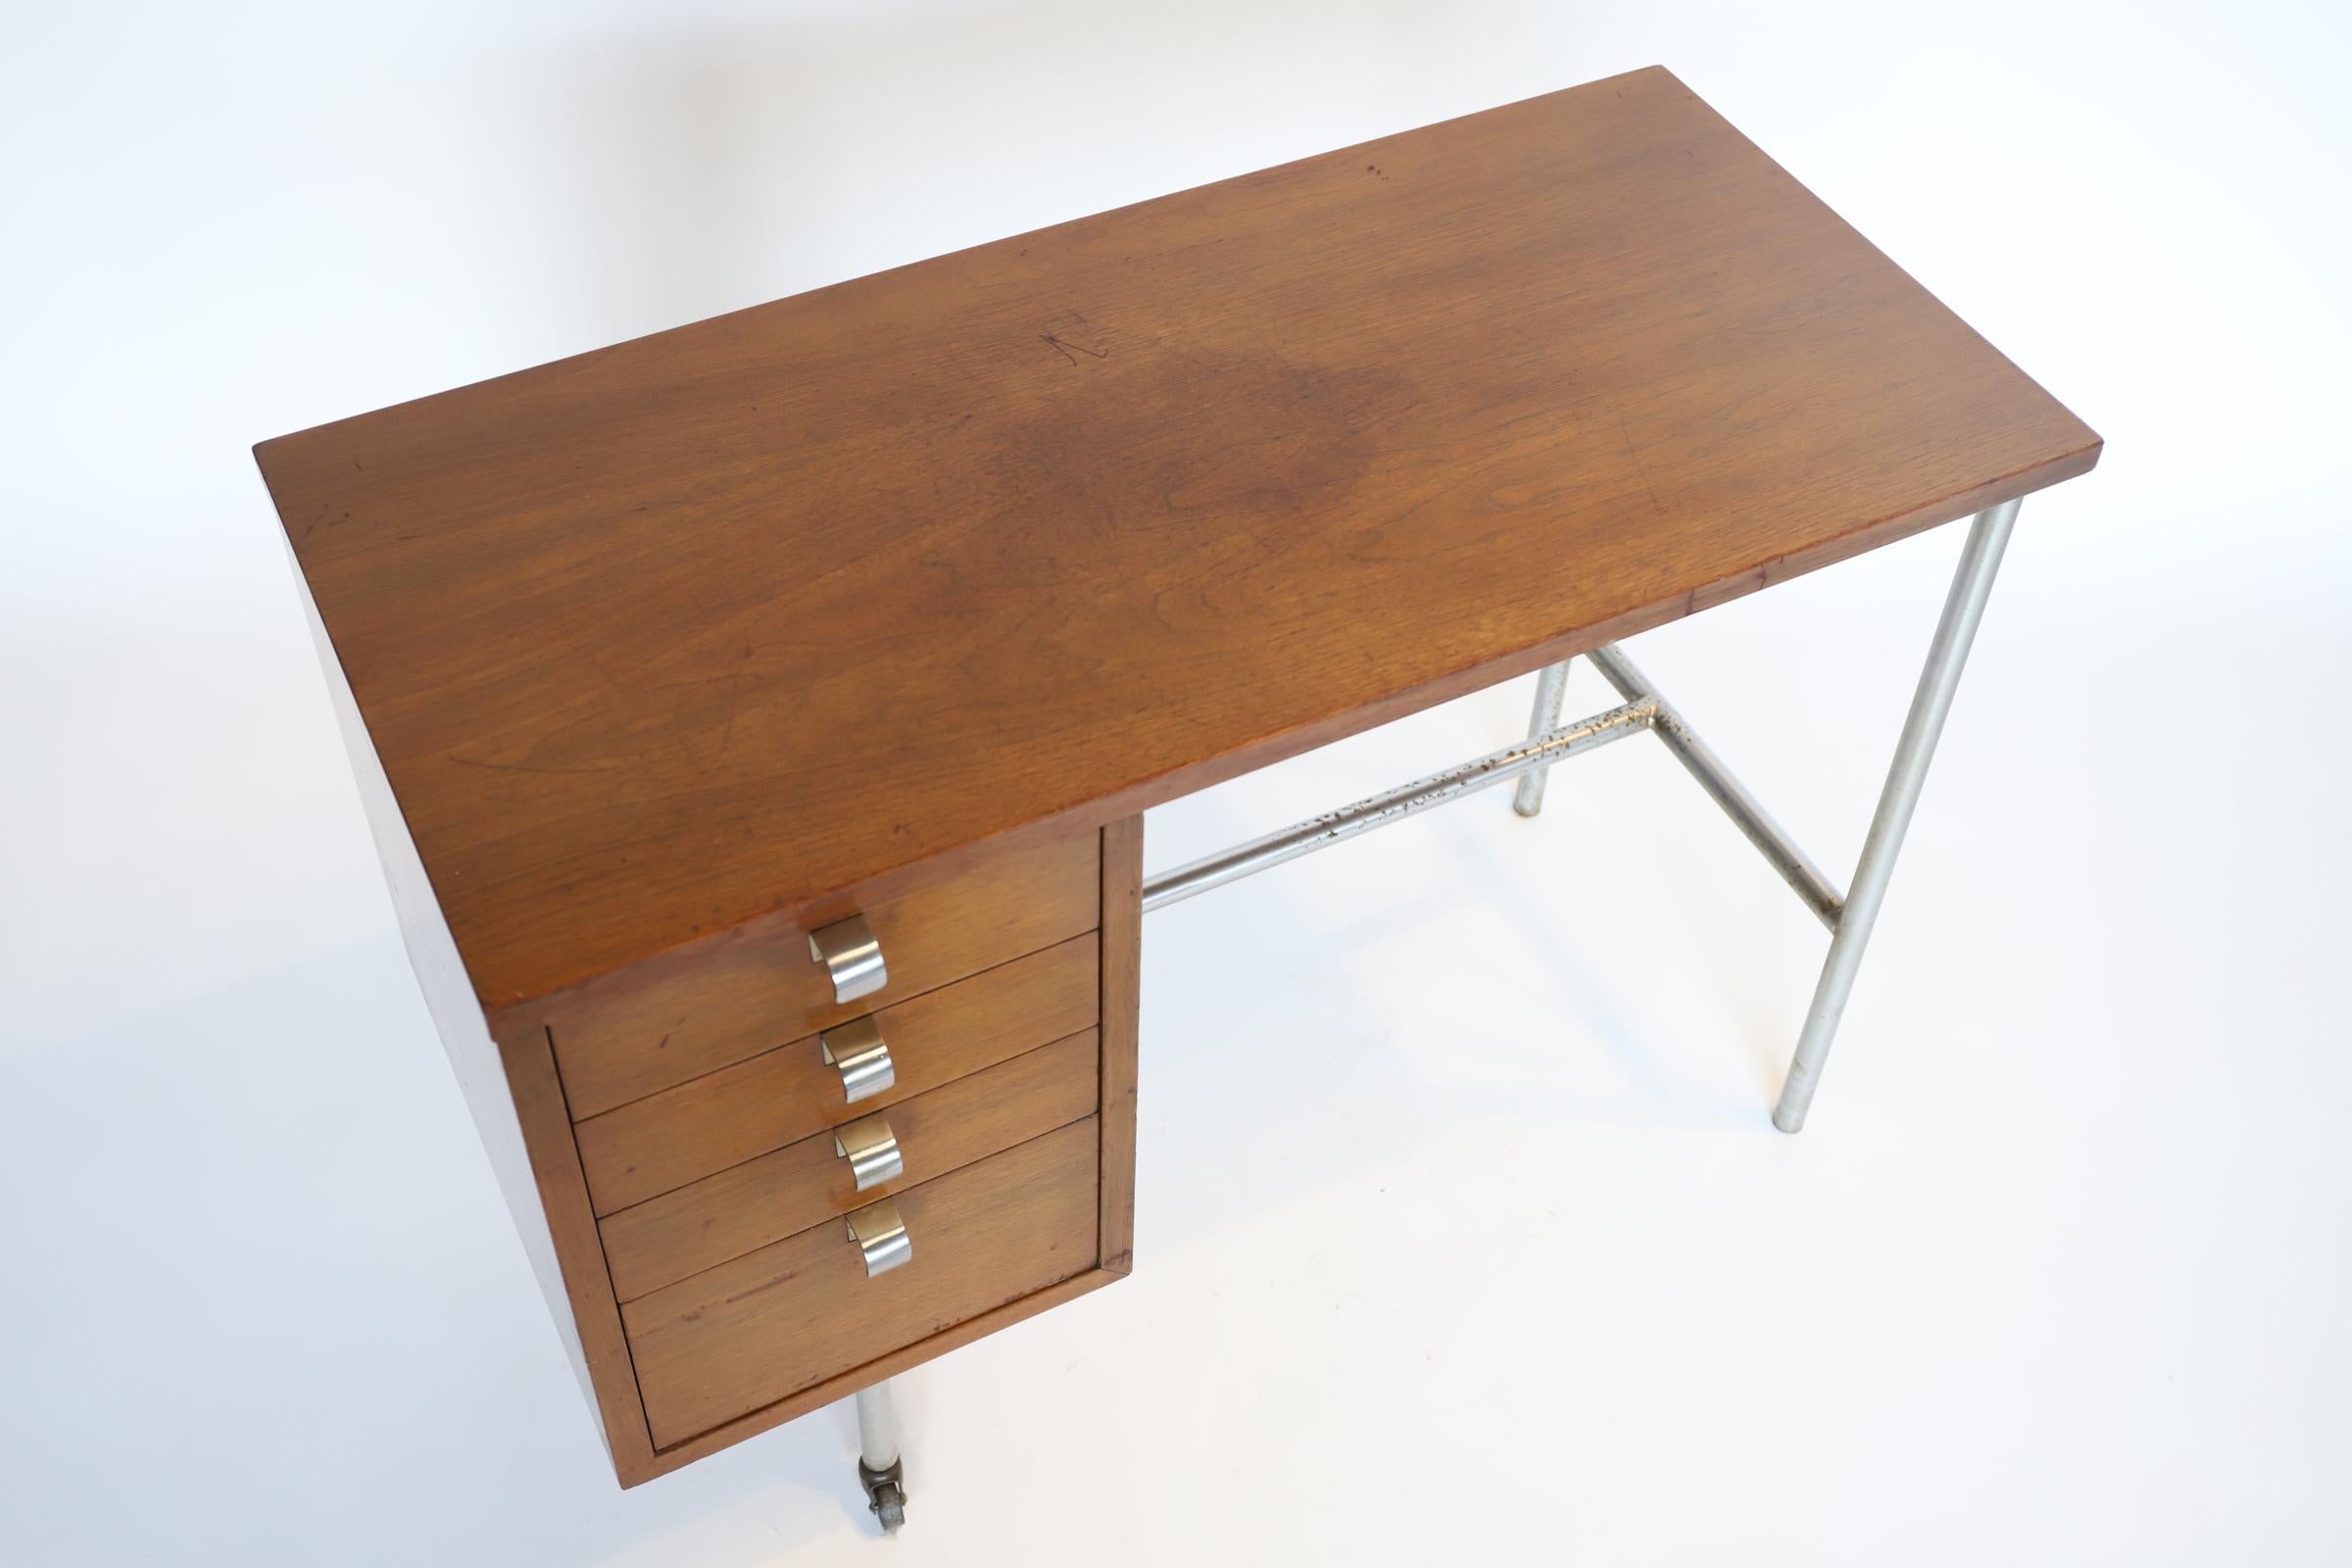 Die Rückkehr des kultigen Herman Miller-Schreibtischs, ein Zeugnis des visionären Designs von George Nelson. Dieses außergewöhnliche Möbelstück verbindet nahtlos Funktionalität mit der Ästhetik der Jahrhundertmitte und ist damit eine begehrte